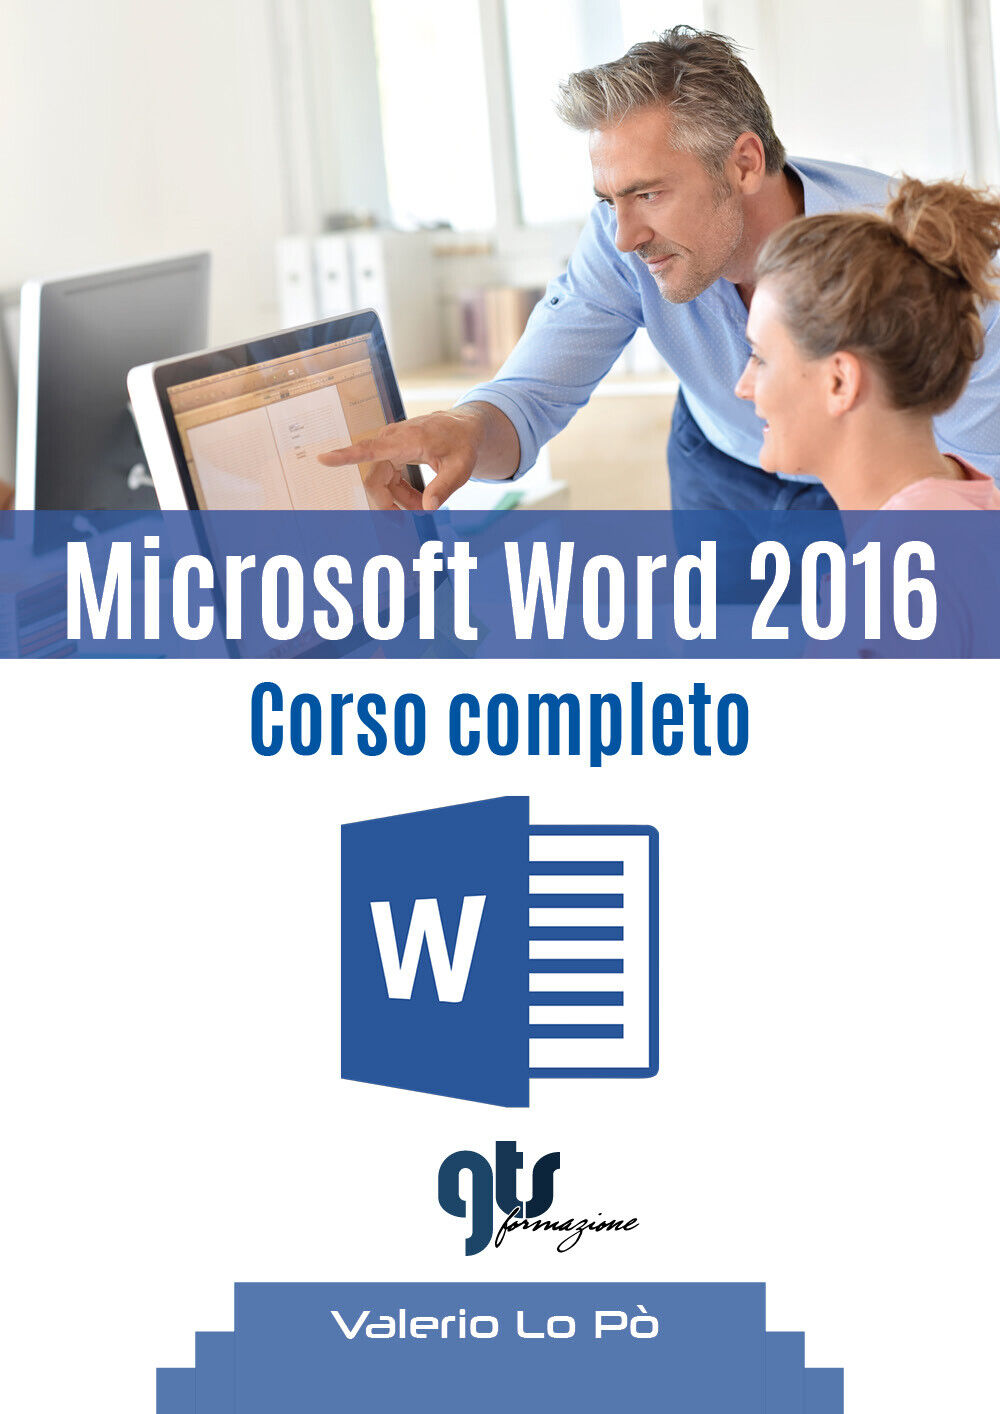 Microsoft Word 2016 - Corso completo  di Valerio Lo P?,  2019,  Youcanprint libro usato